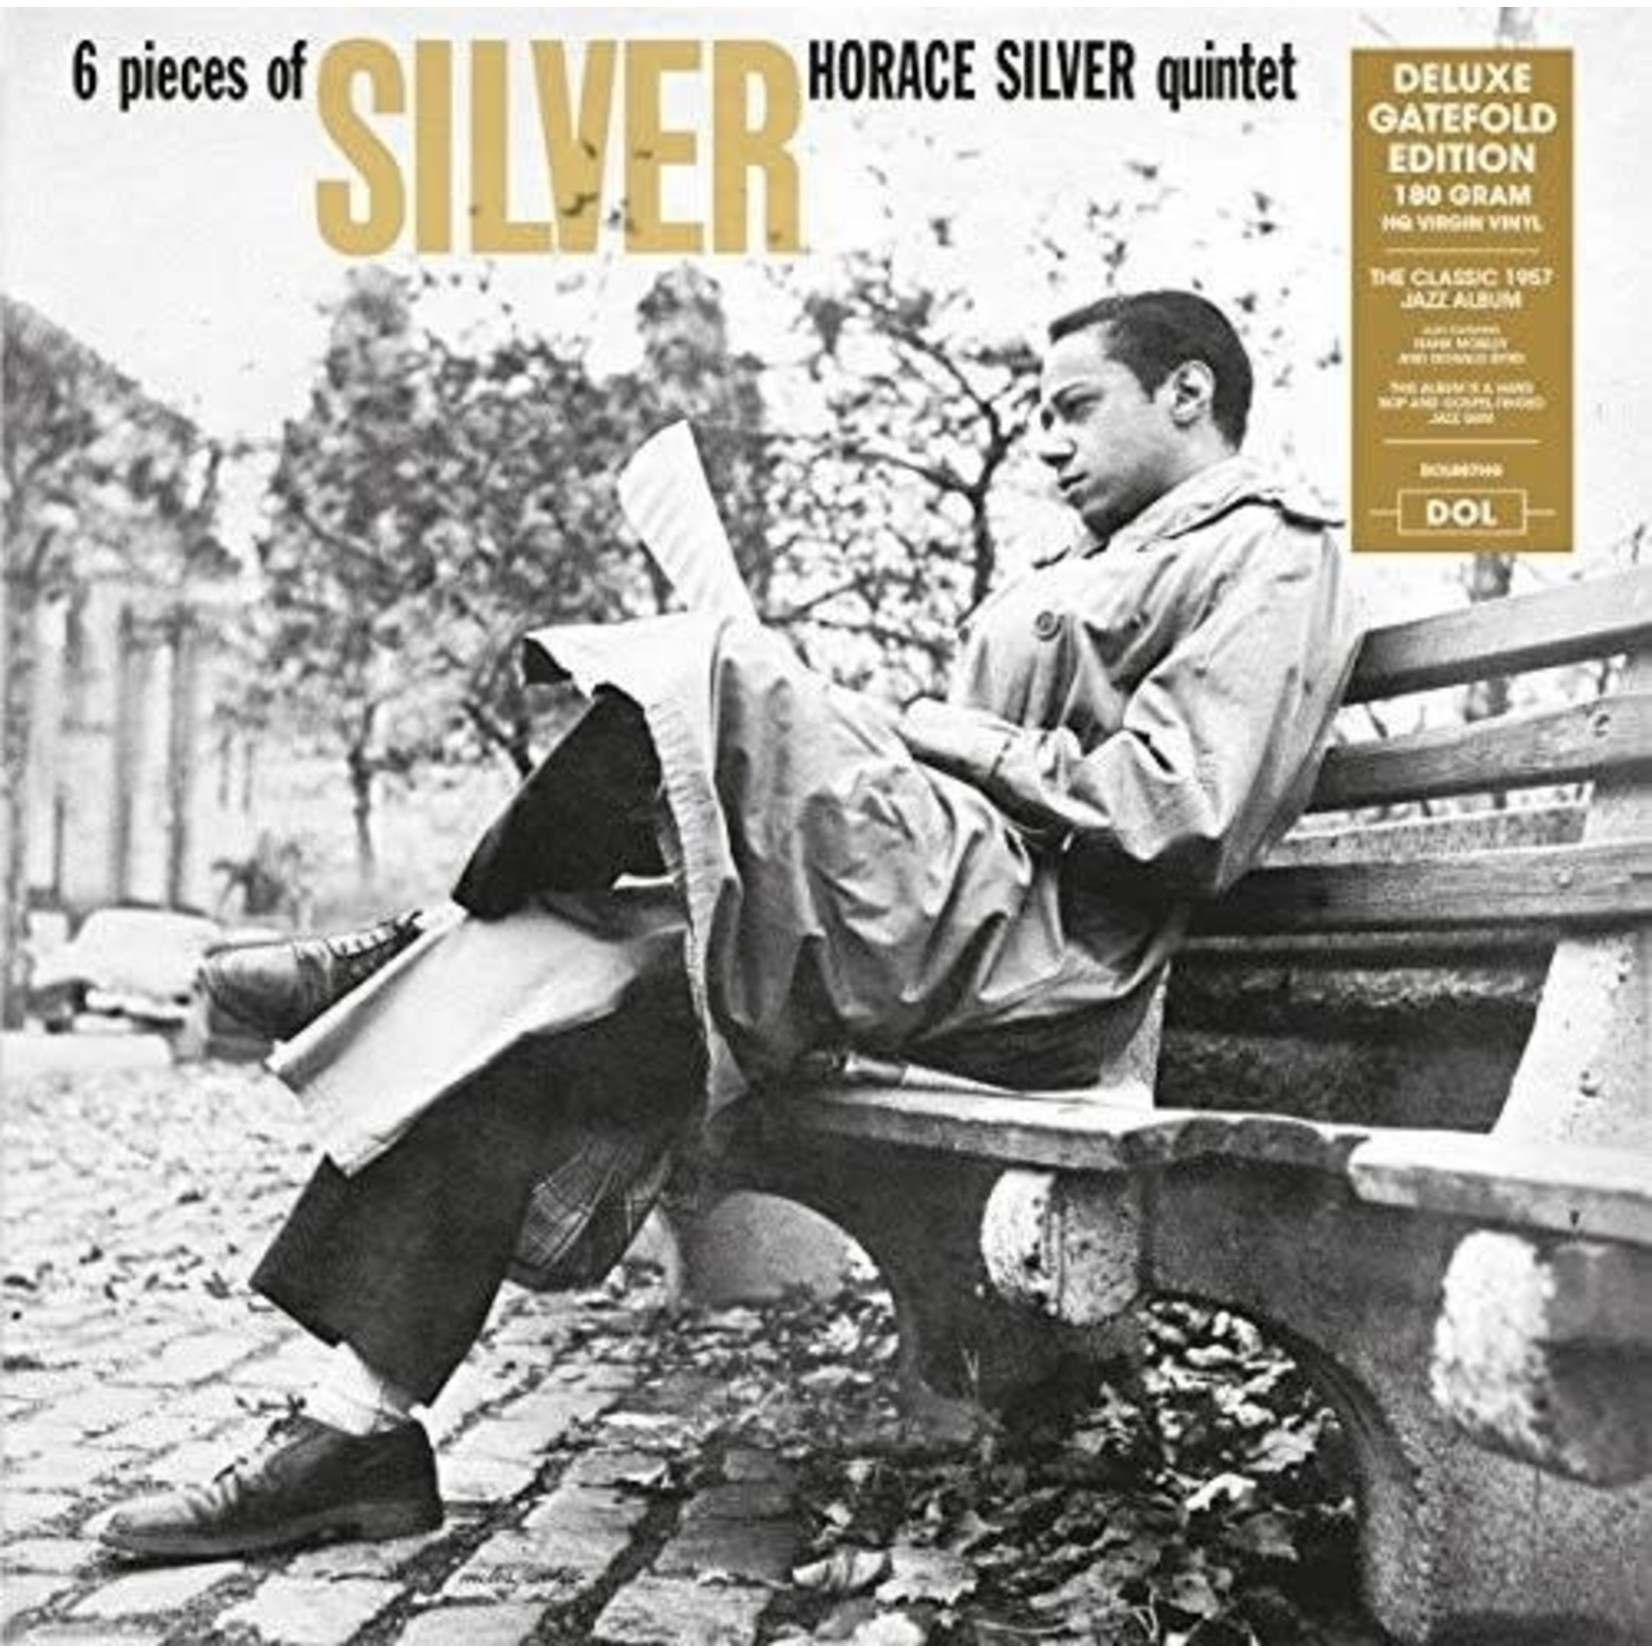 DOL Horace Silver Quintet - 6 Pieces Of Silver (LP)